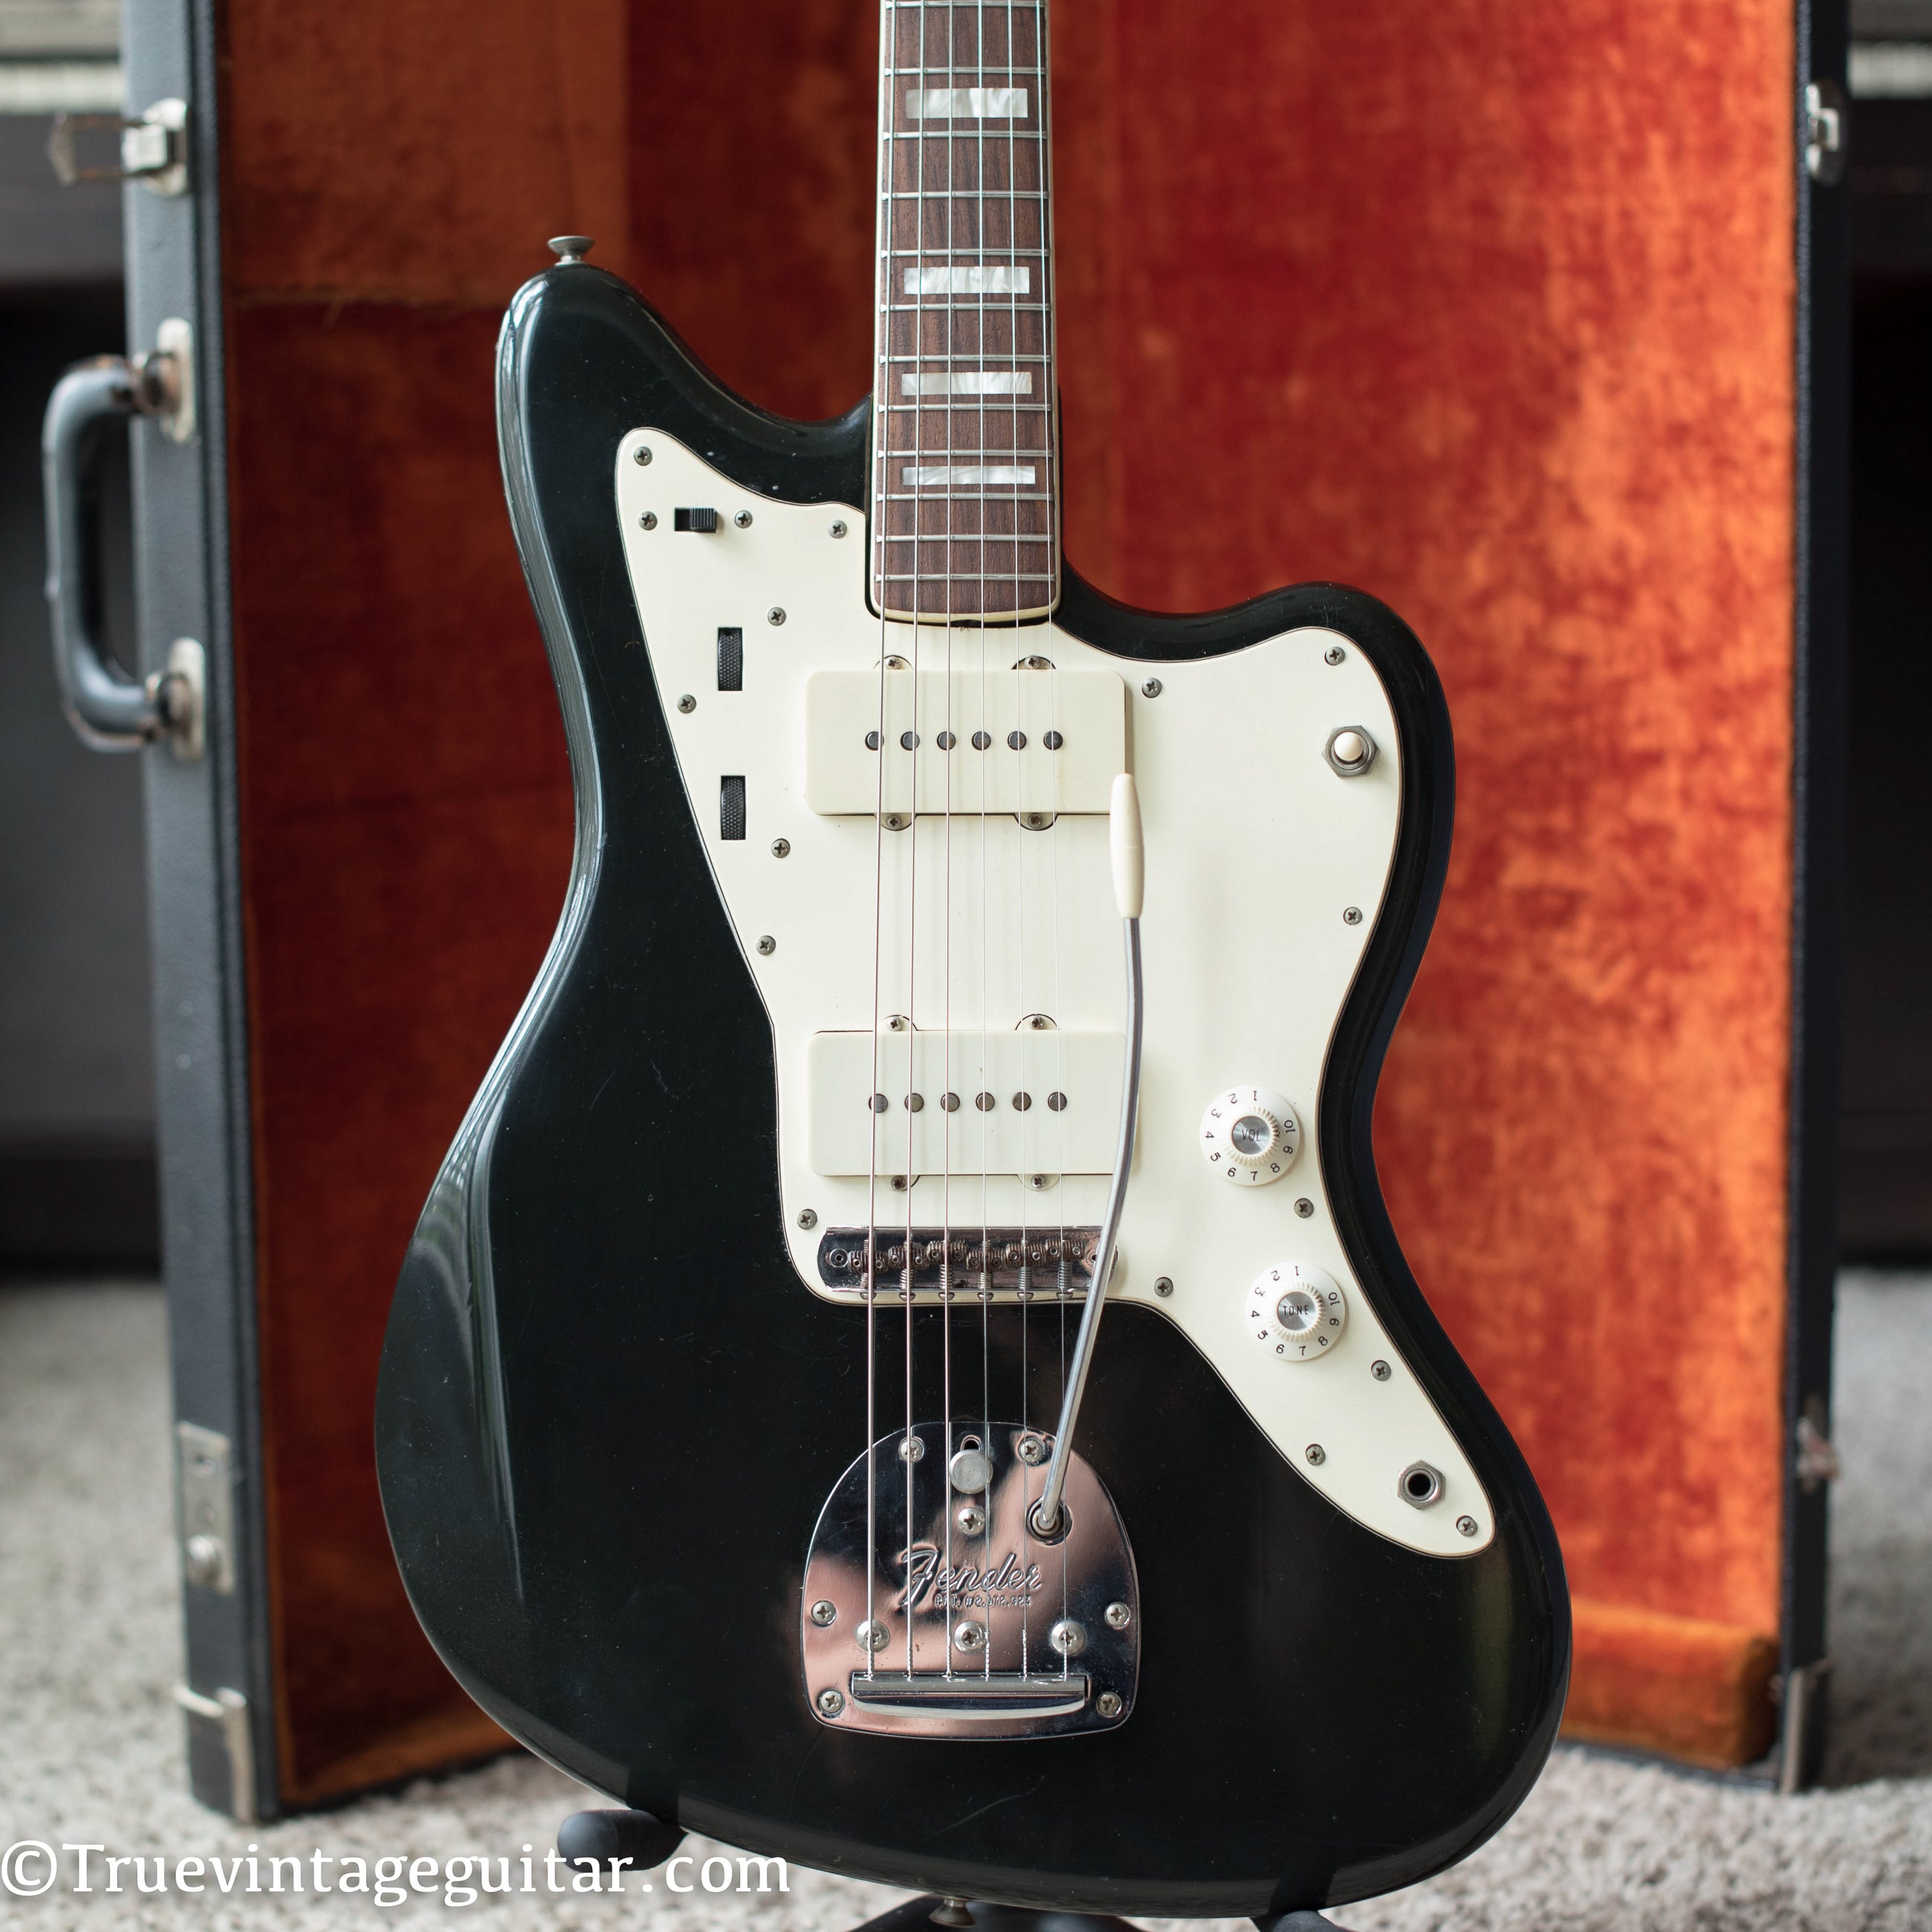 Vintage 1971 Fender Jazzmaster guitar Black